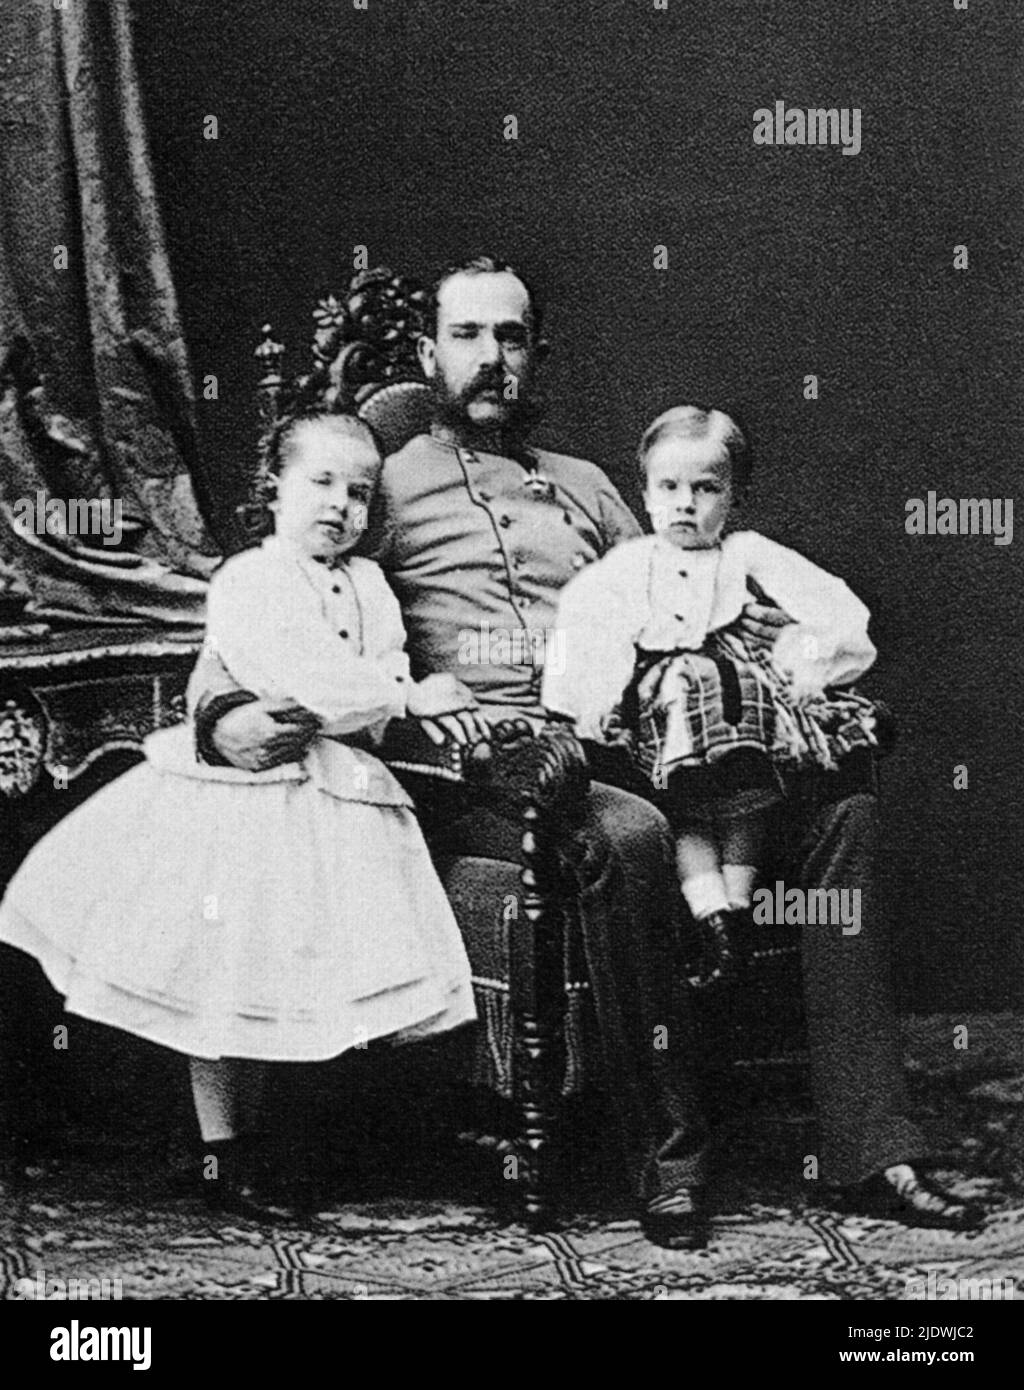 1904 , Vienne , Autriche : le Kaiser autrichien FRANZ JOSEF ( Schönbrunn 1830 - 1916 ) , empereur d'Autriche , roi de Hongrie et de Bohême , huvant de l'impératrice Elisabeth SISSI de Bayern . Dans cette photo avec les 2 fils : GISELA ( 1856 - 1932 ) et RUDOLF ( 1858 - suicide à Mayerling 1889 ) - FRANCESCO GIUSEPPE - JOSEPH - ABSBURG - ASBURG - ASBURGO - NOBLESSE - NOBILI - NOBILTA' - REALI - HABSBURG - HASBURG - ROYALTIES - divisa militare - uniforme militaire - figli - bambini - enfant - enfants --- Archivio GBB Banque D'Images